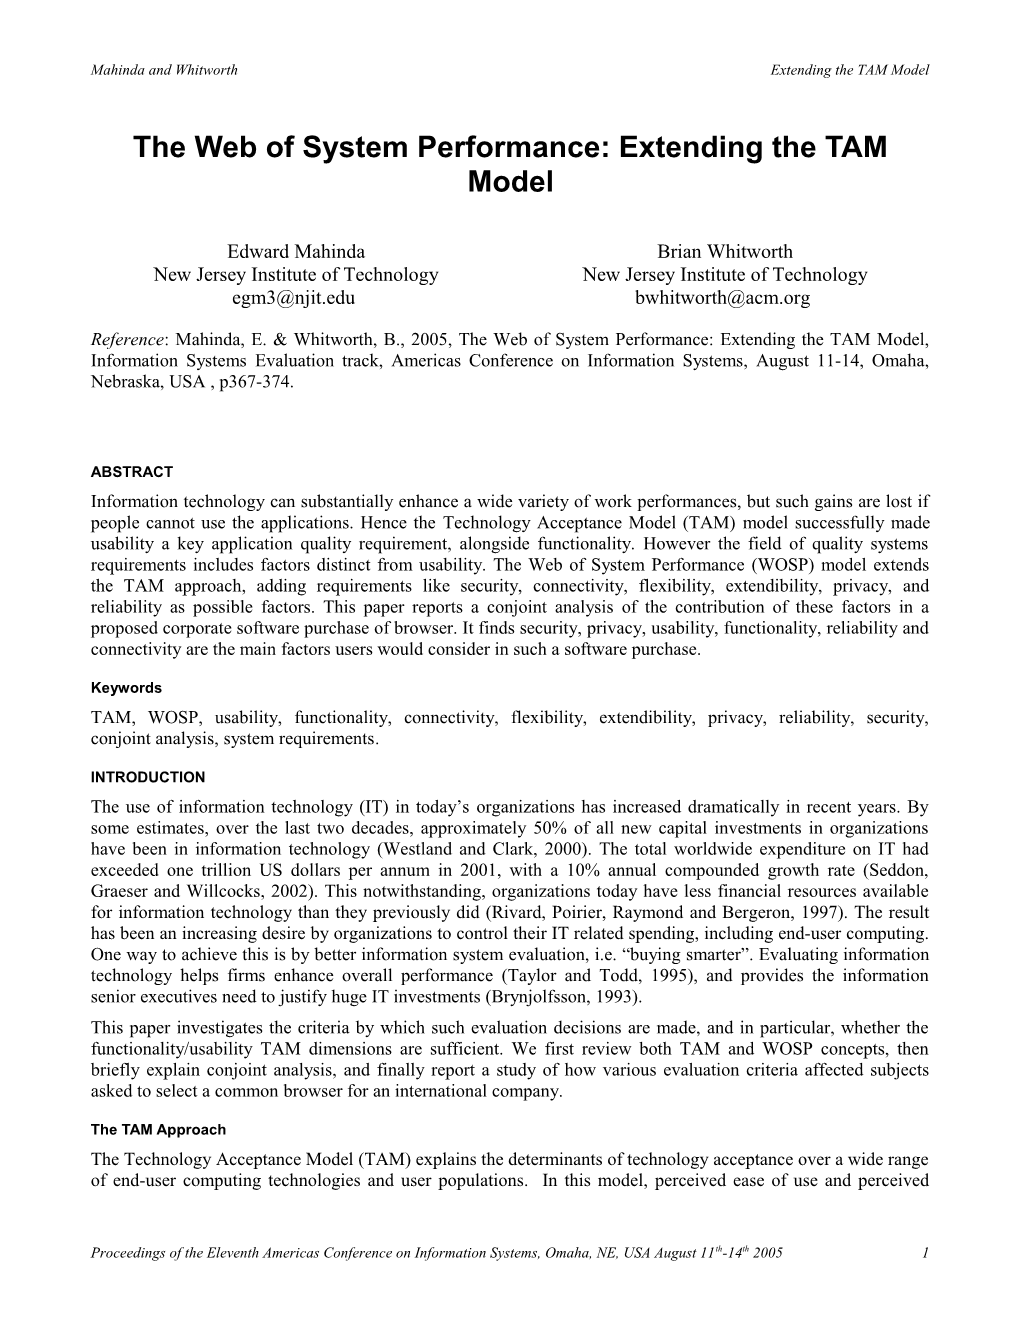 The WOSP Model: Extending the TAM Model